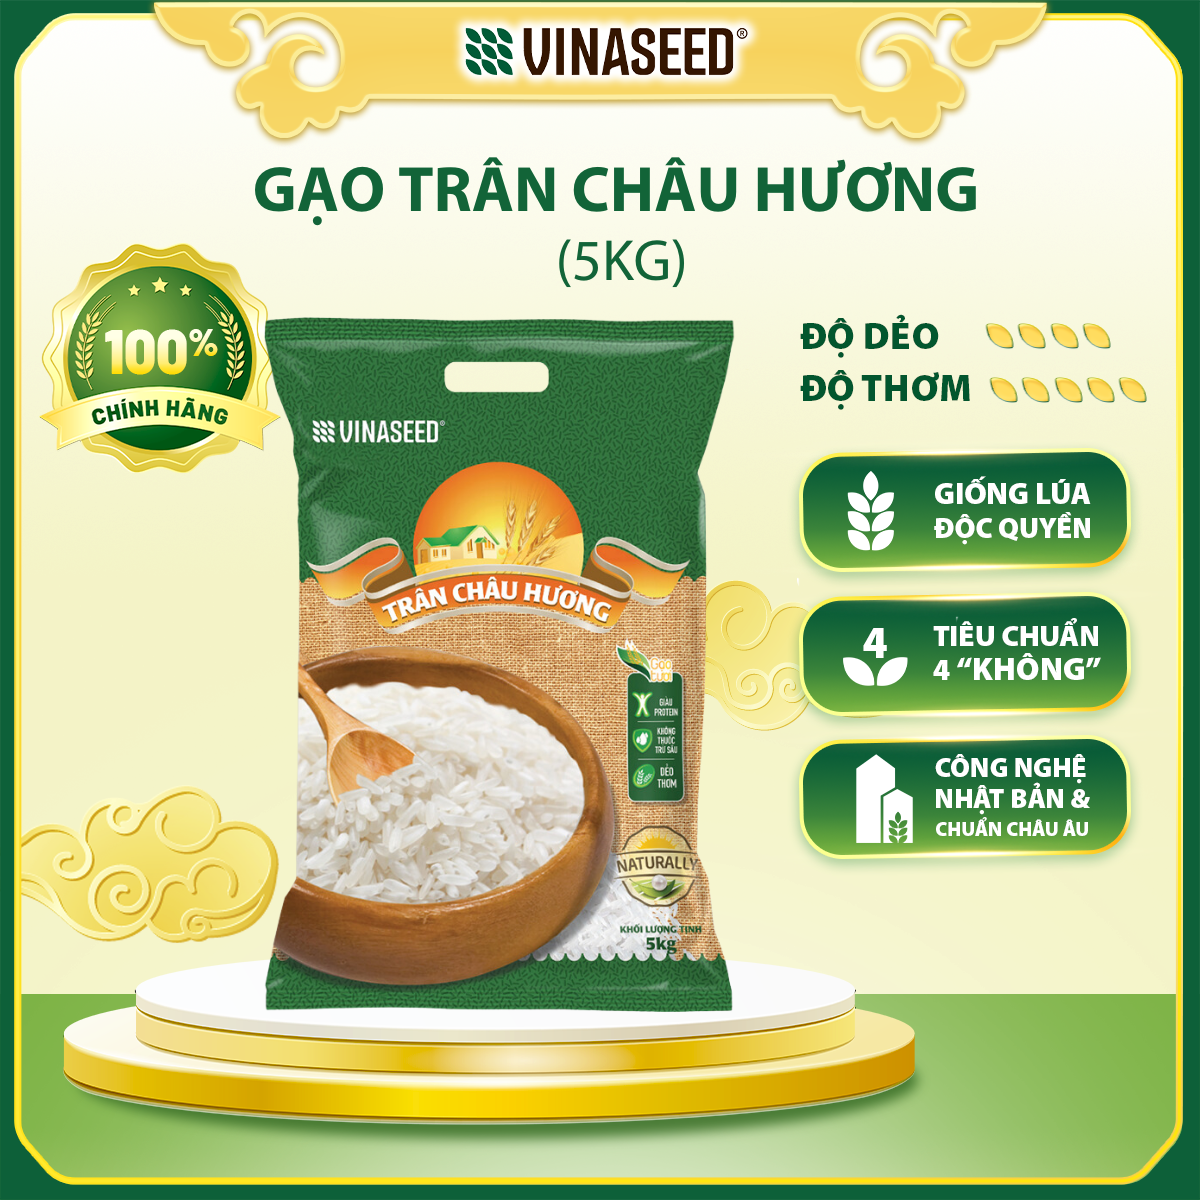 Gạo Trân Châu Hương Vinaseed Túi 5kg - Hạt trắng trong, thơm tự nhiên